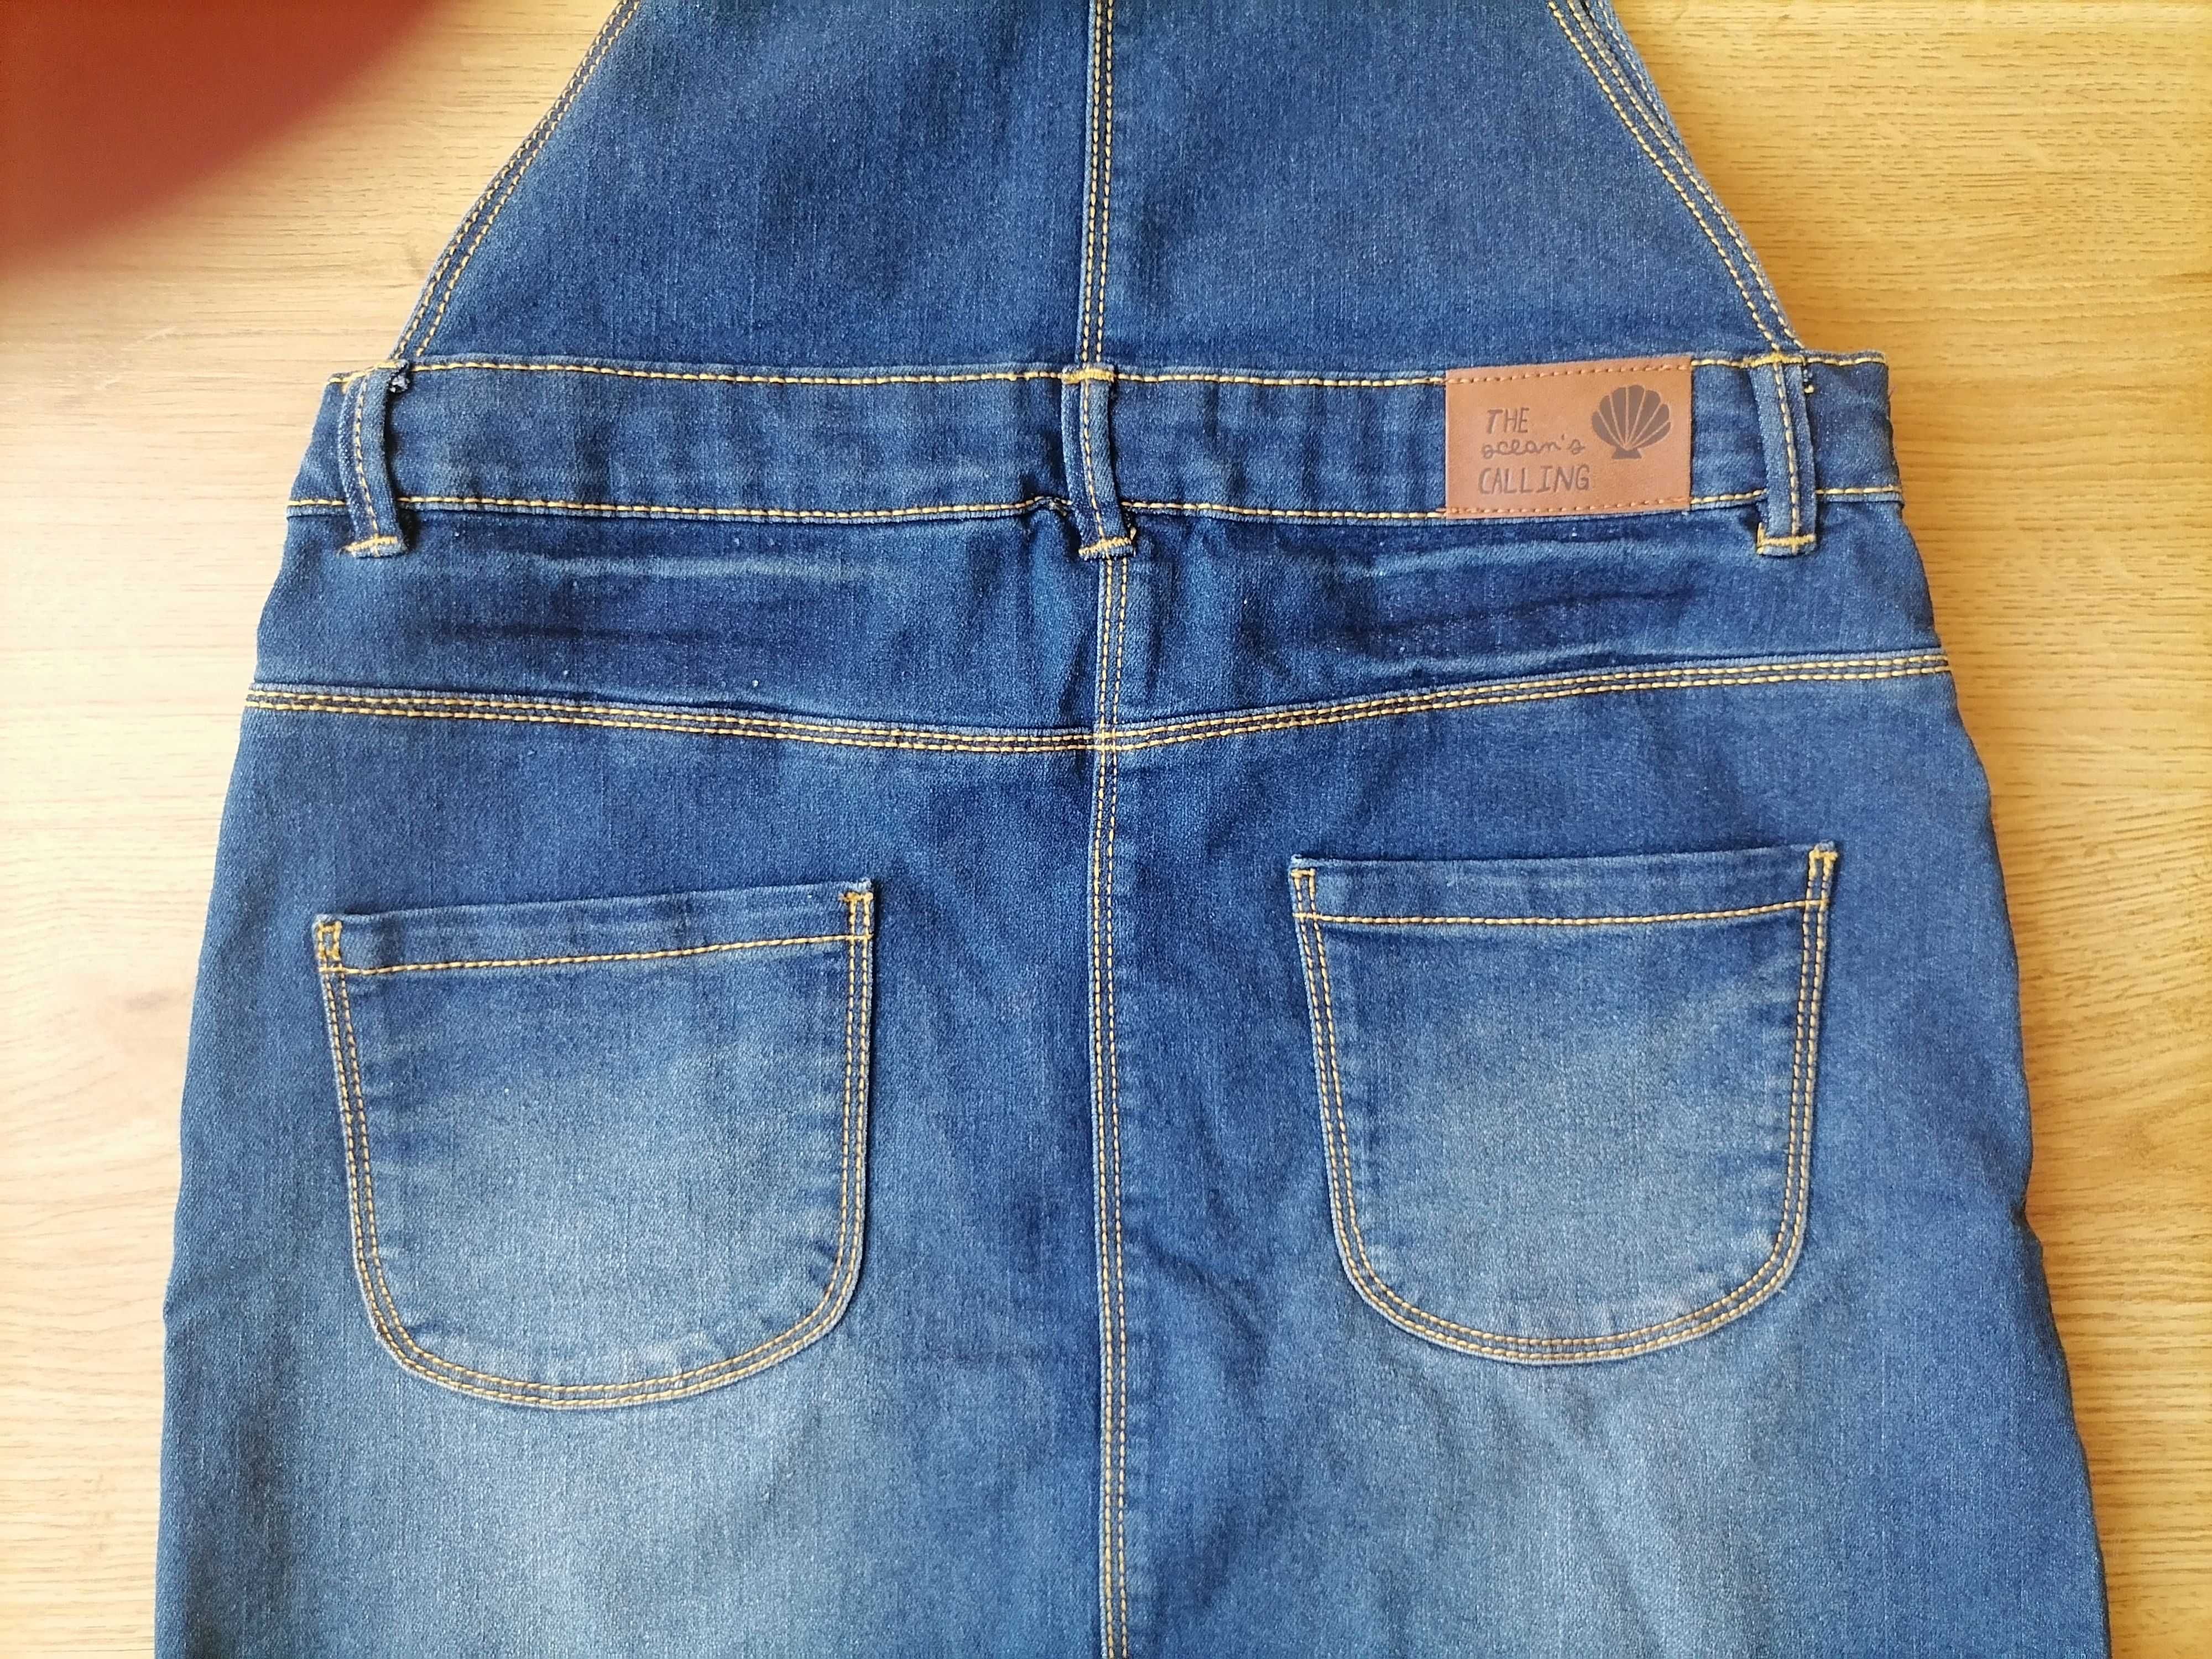 Spódnica jeansowa na szelkach typu ogradniczka, COOL CLUB roz. 164